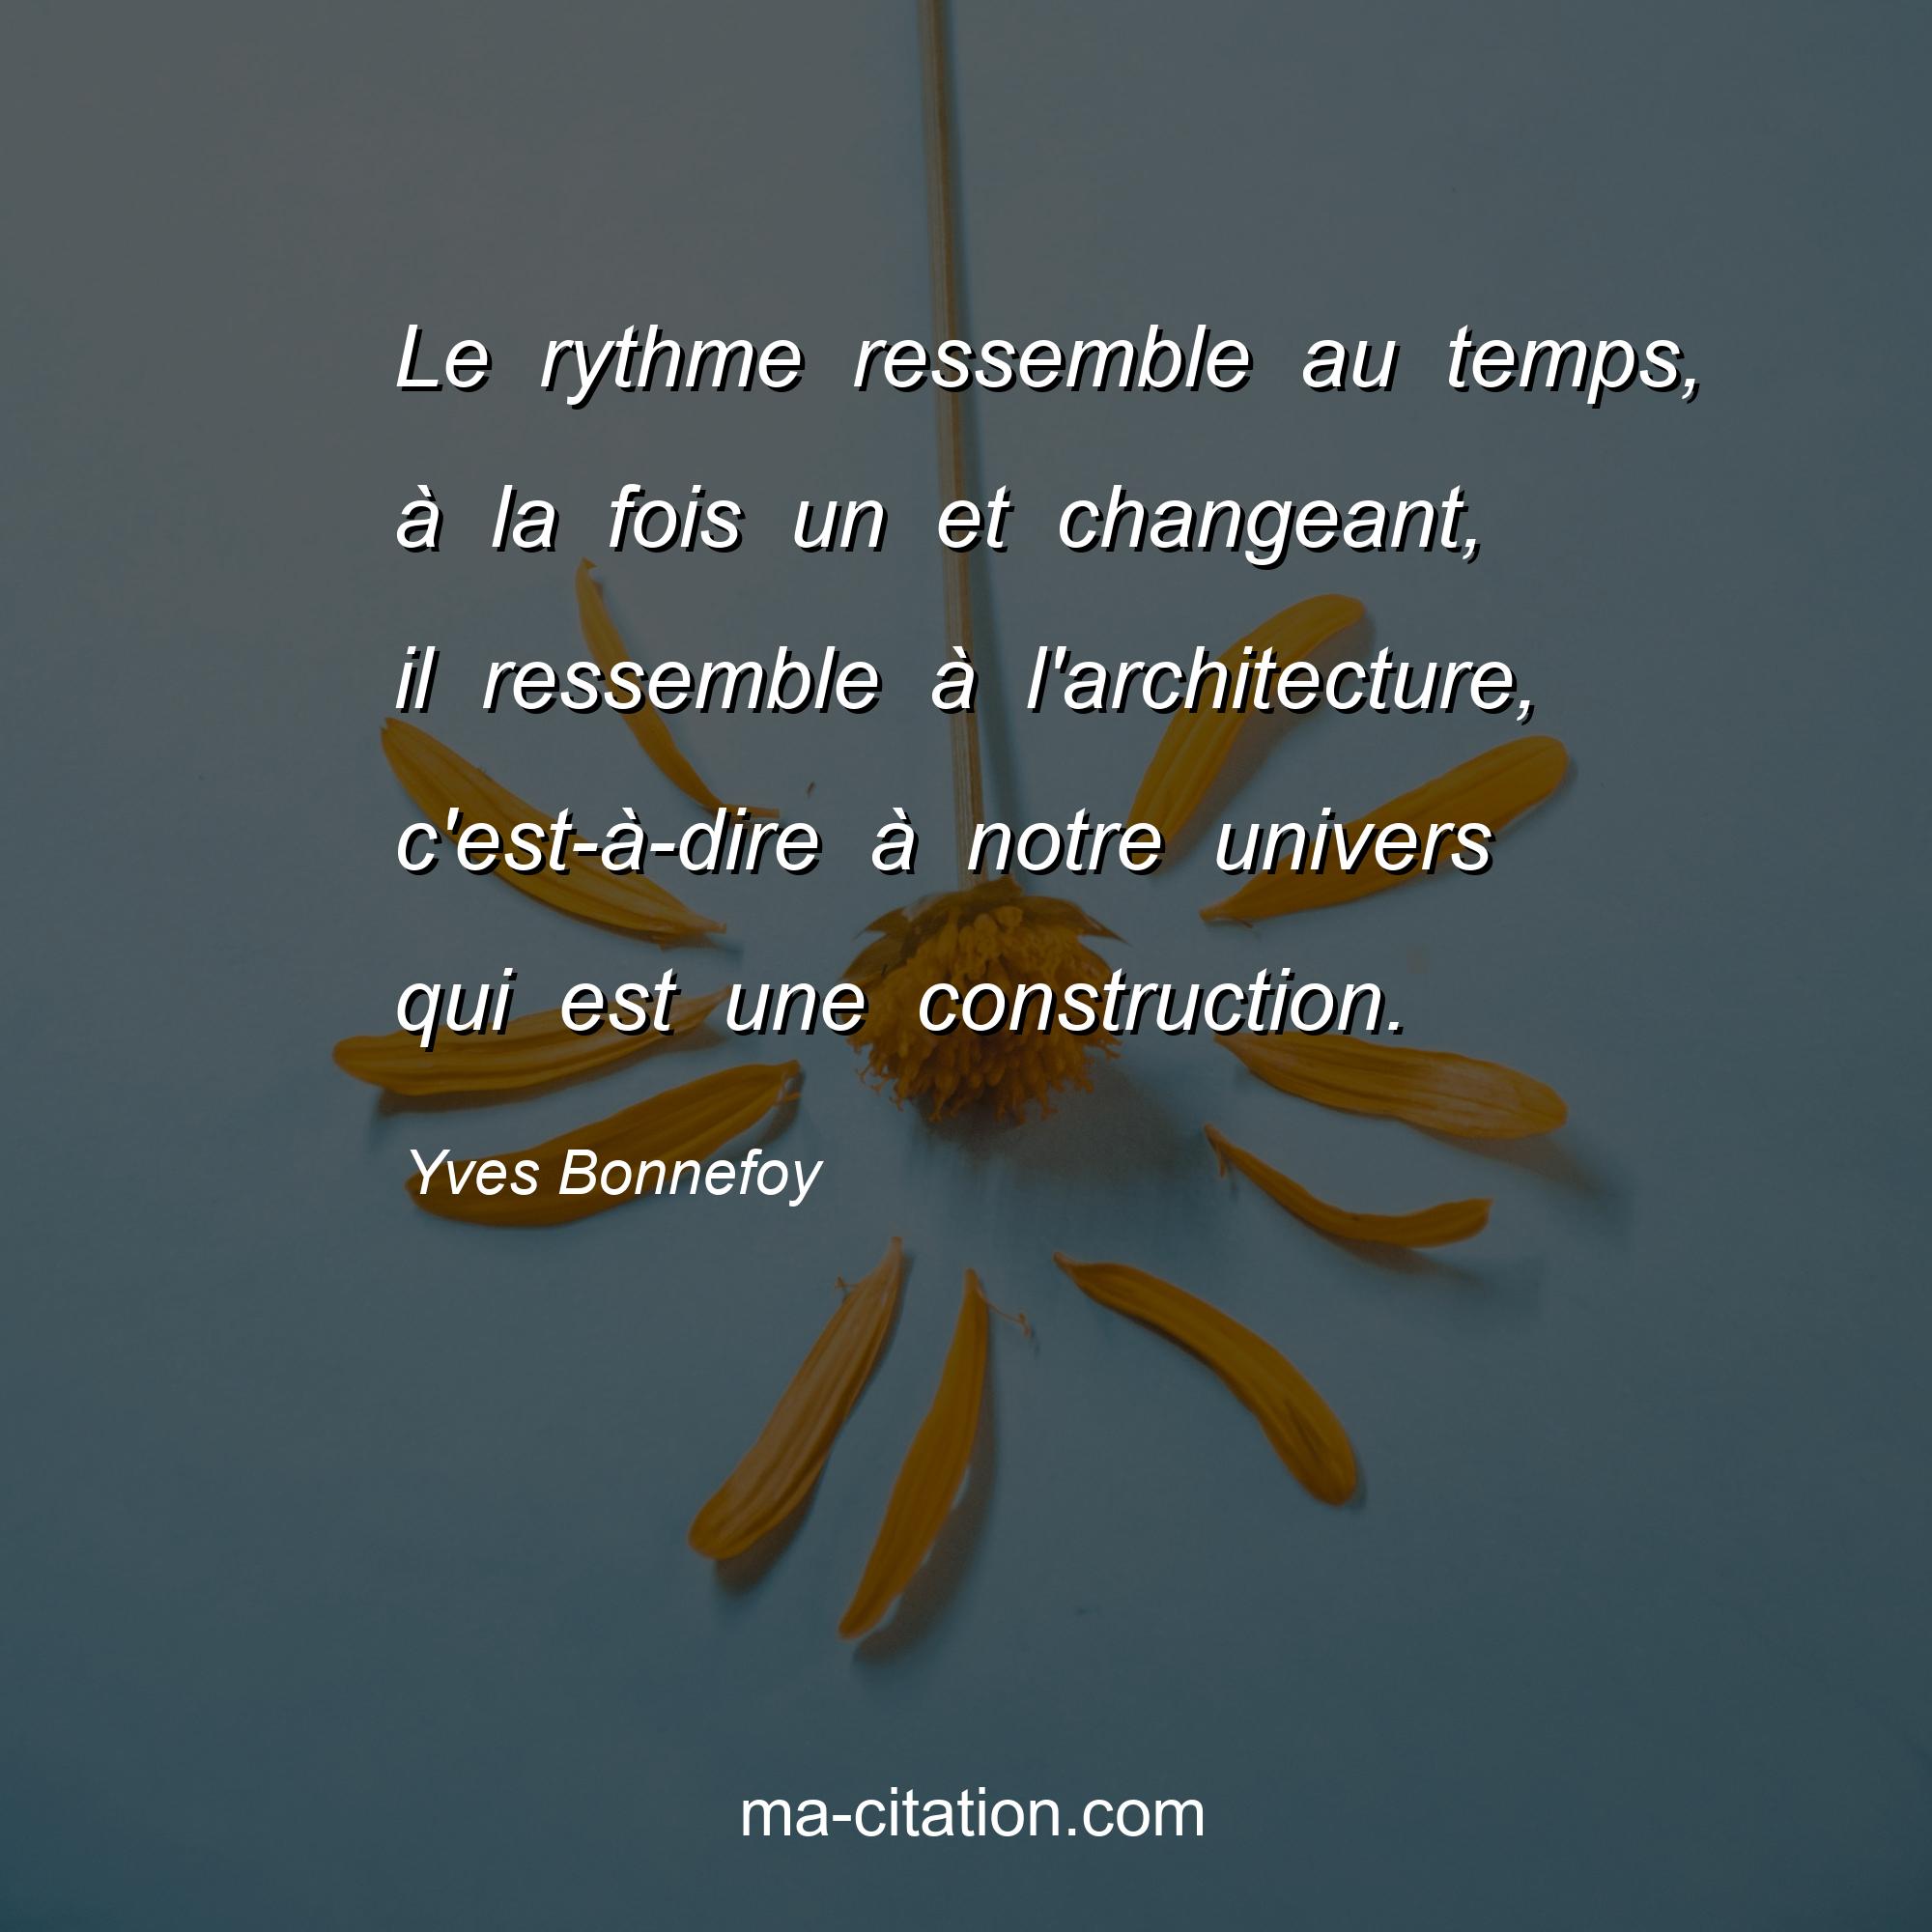 Yves Bonnefoy : Le rythme ressemble au temps, à la fois un et changeant, il ressemble à l'architecture, c'est-à-dire à notre univers qui est une construction.